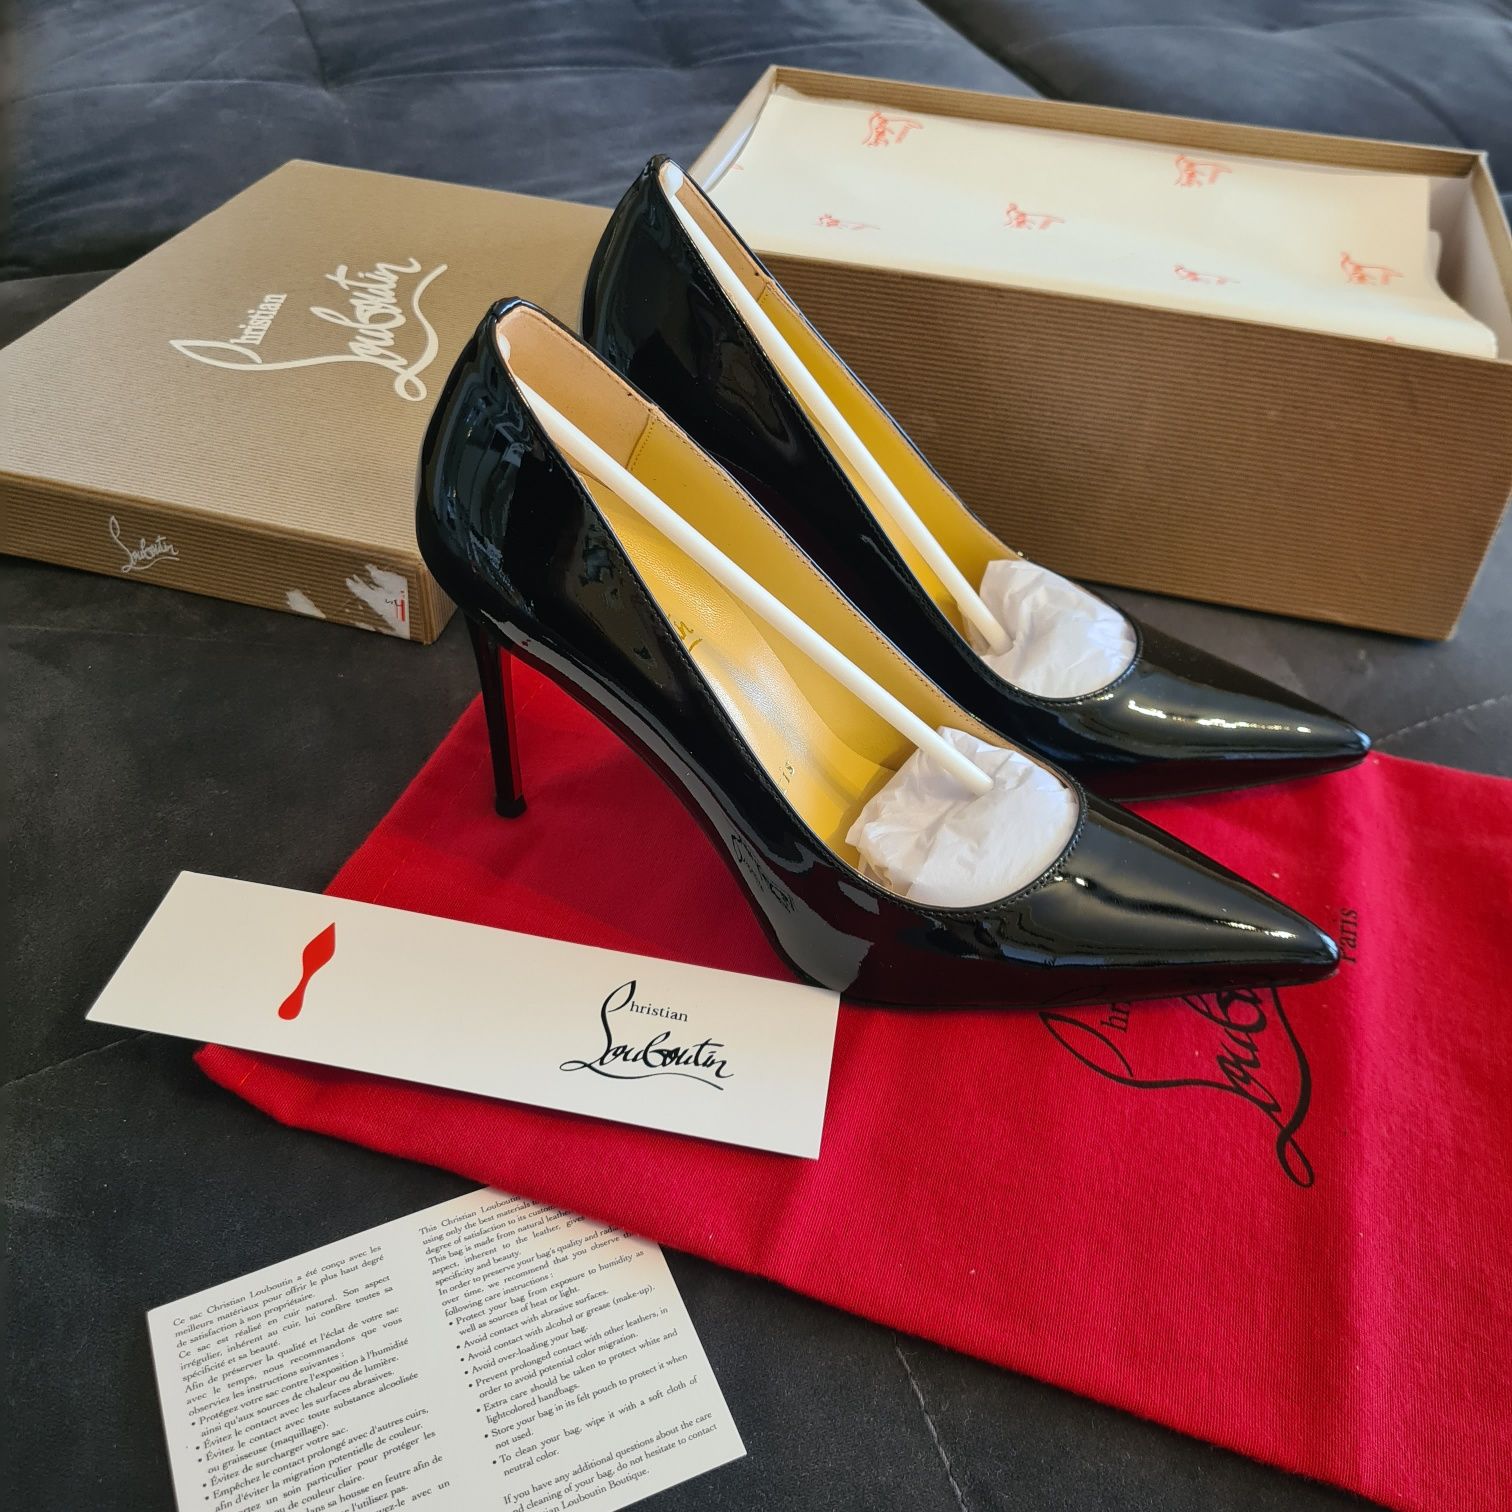 Pantofi Louboutin (Kate 10 cm pumps) - piele naturala, size 38/39